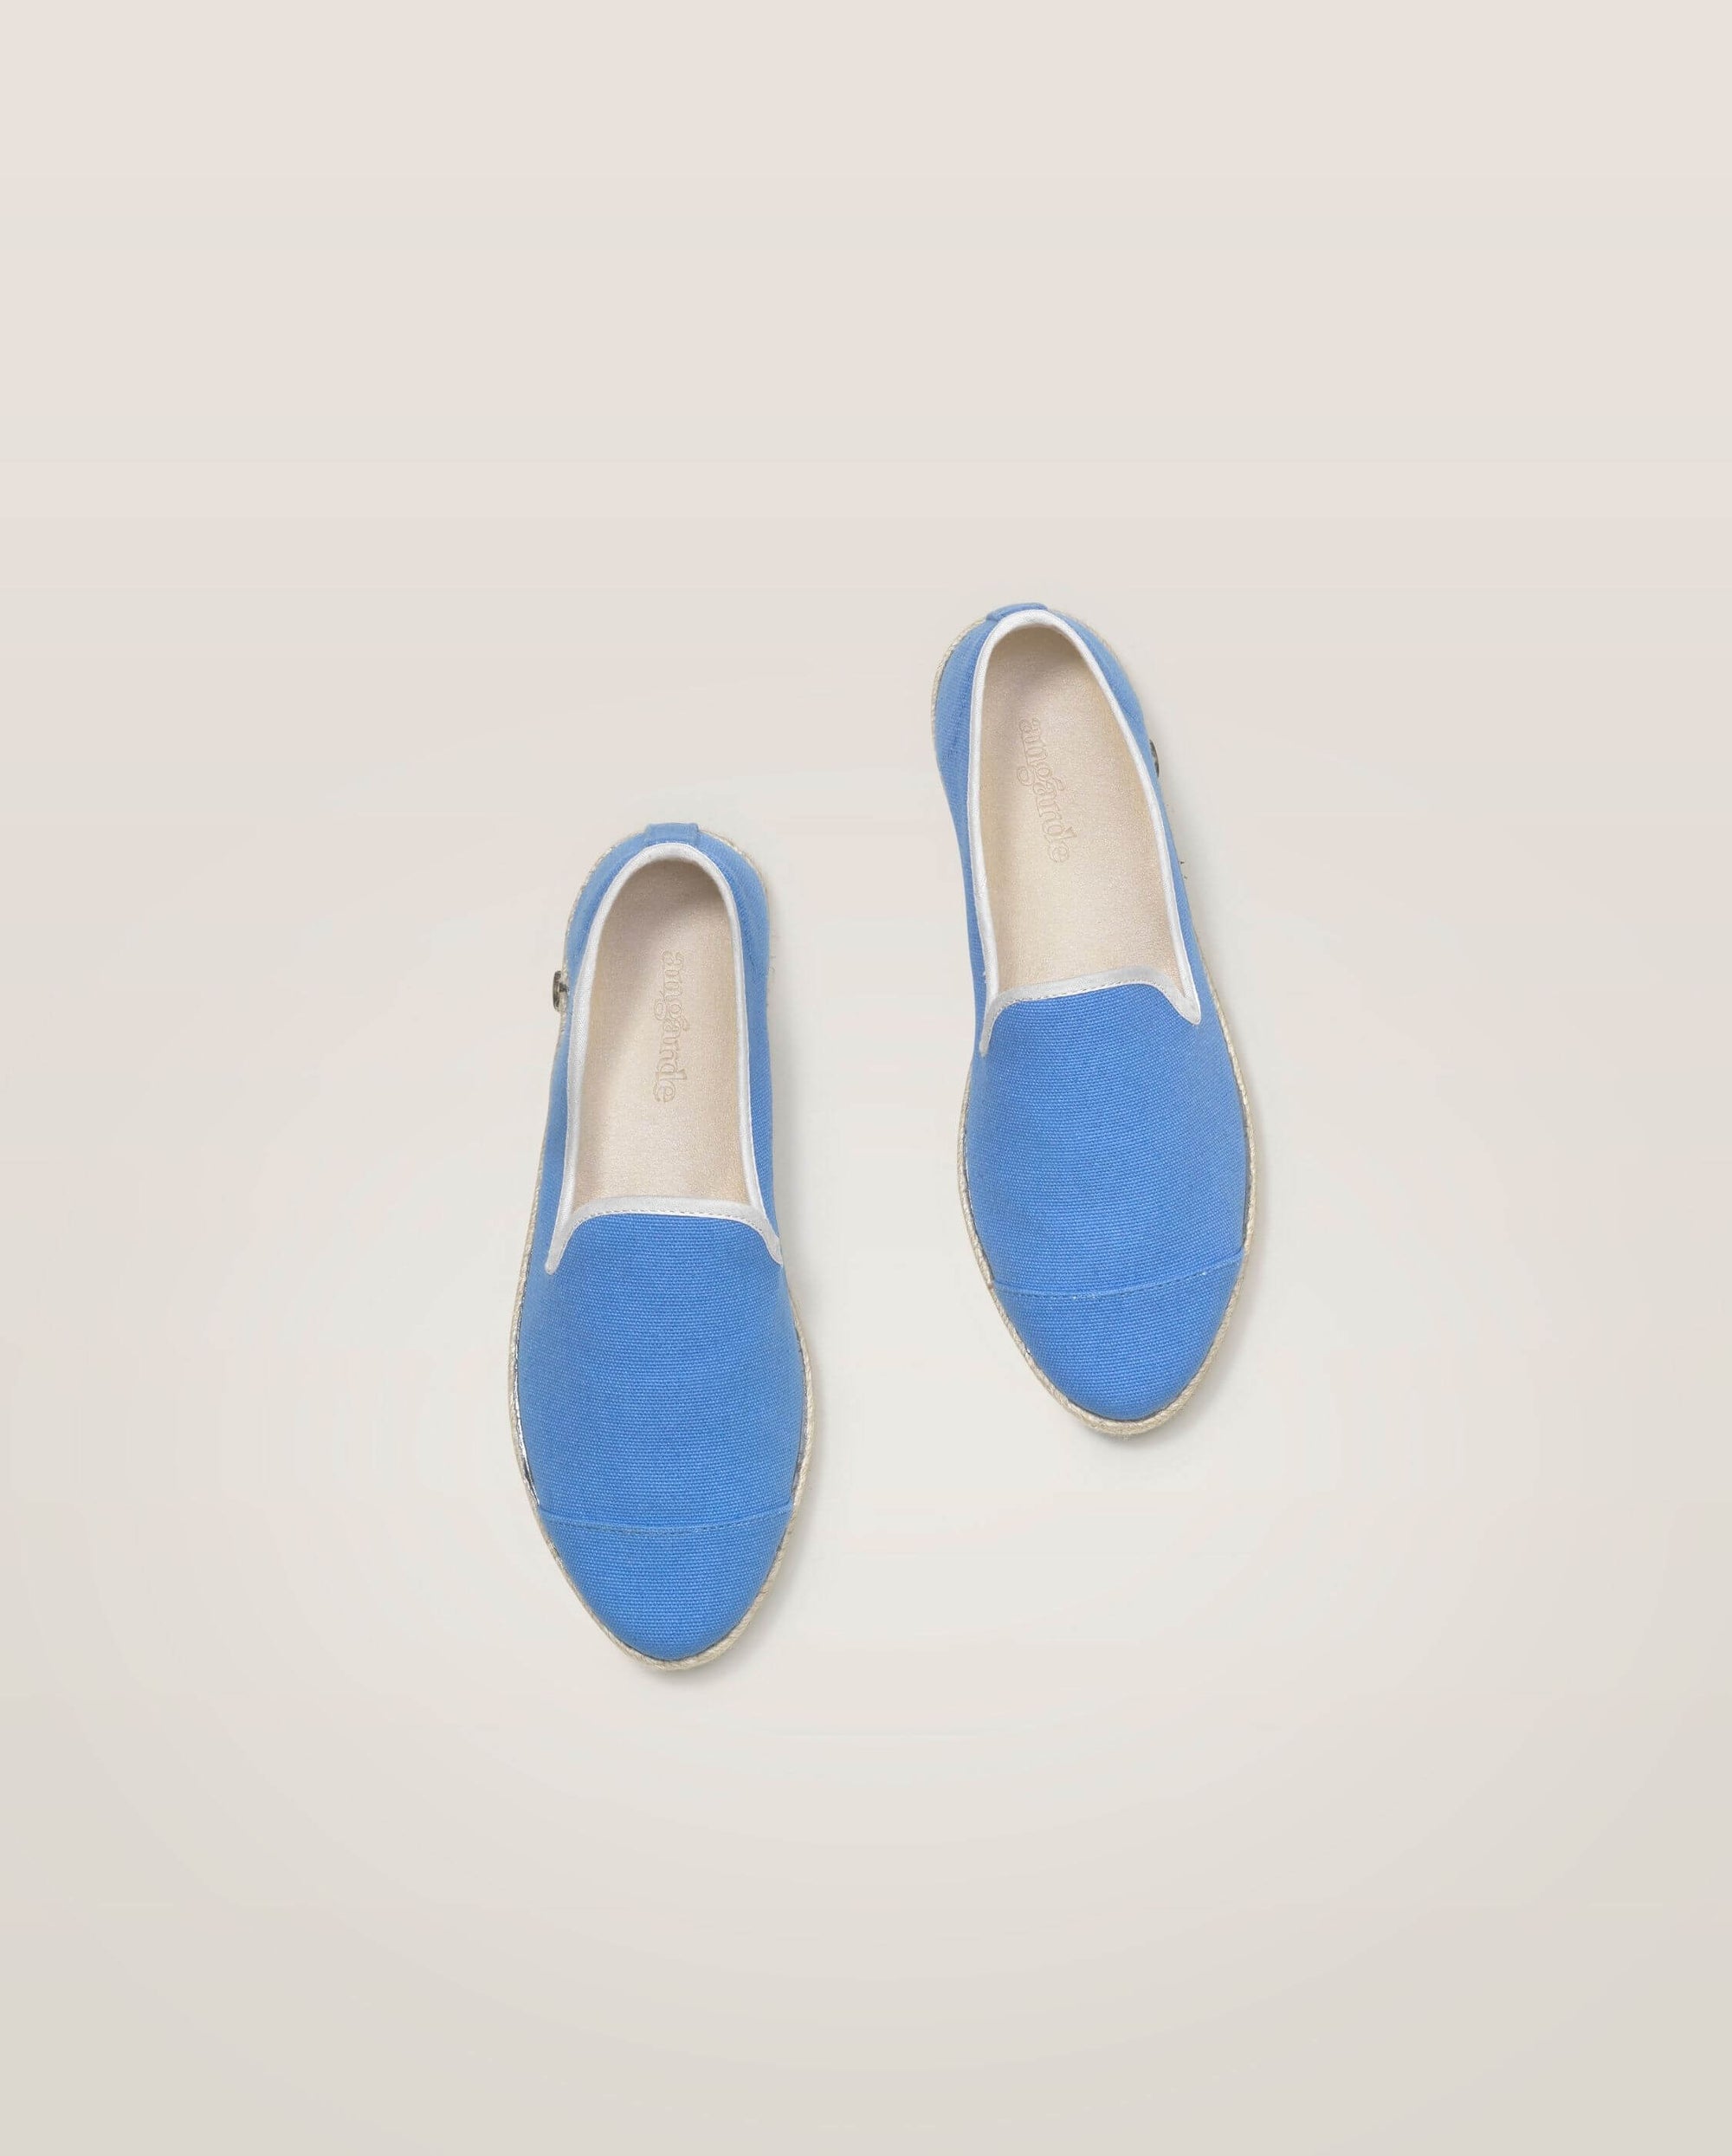 Women's cotton espadrille, blue